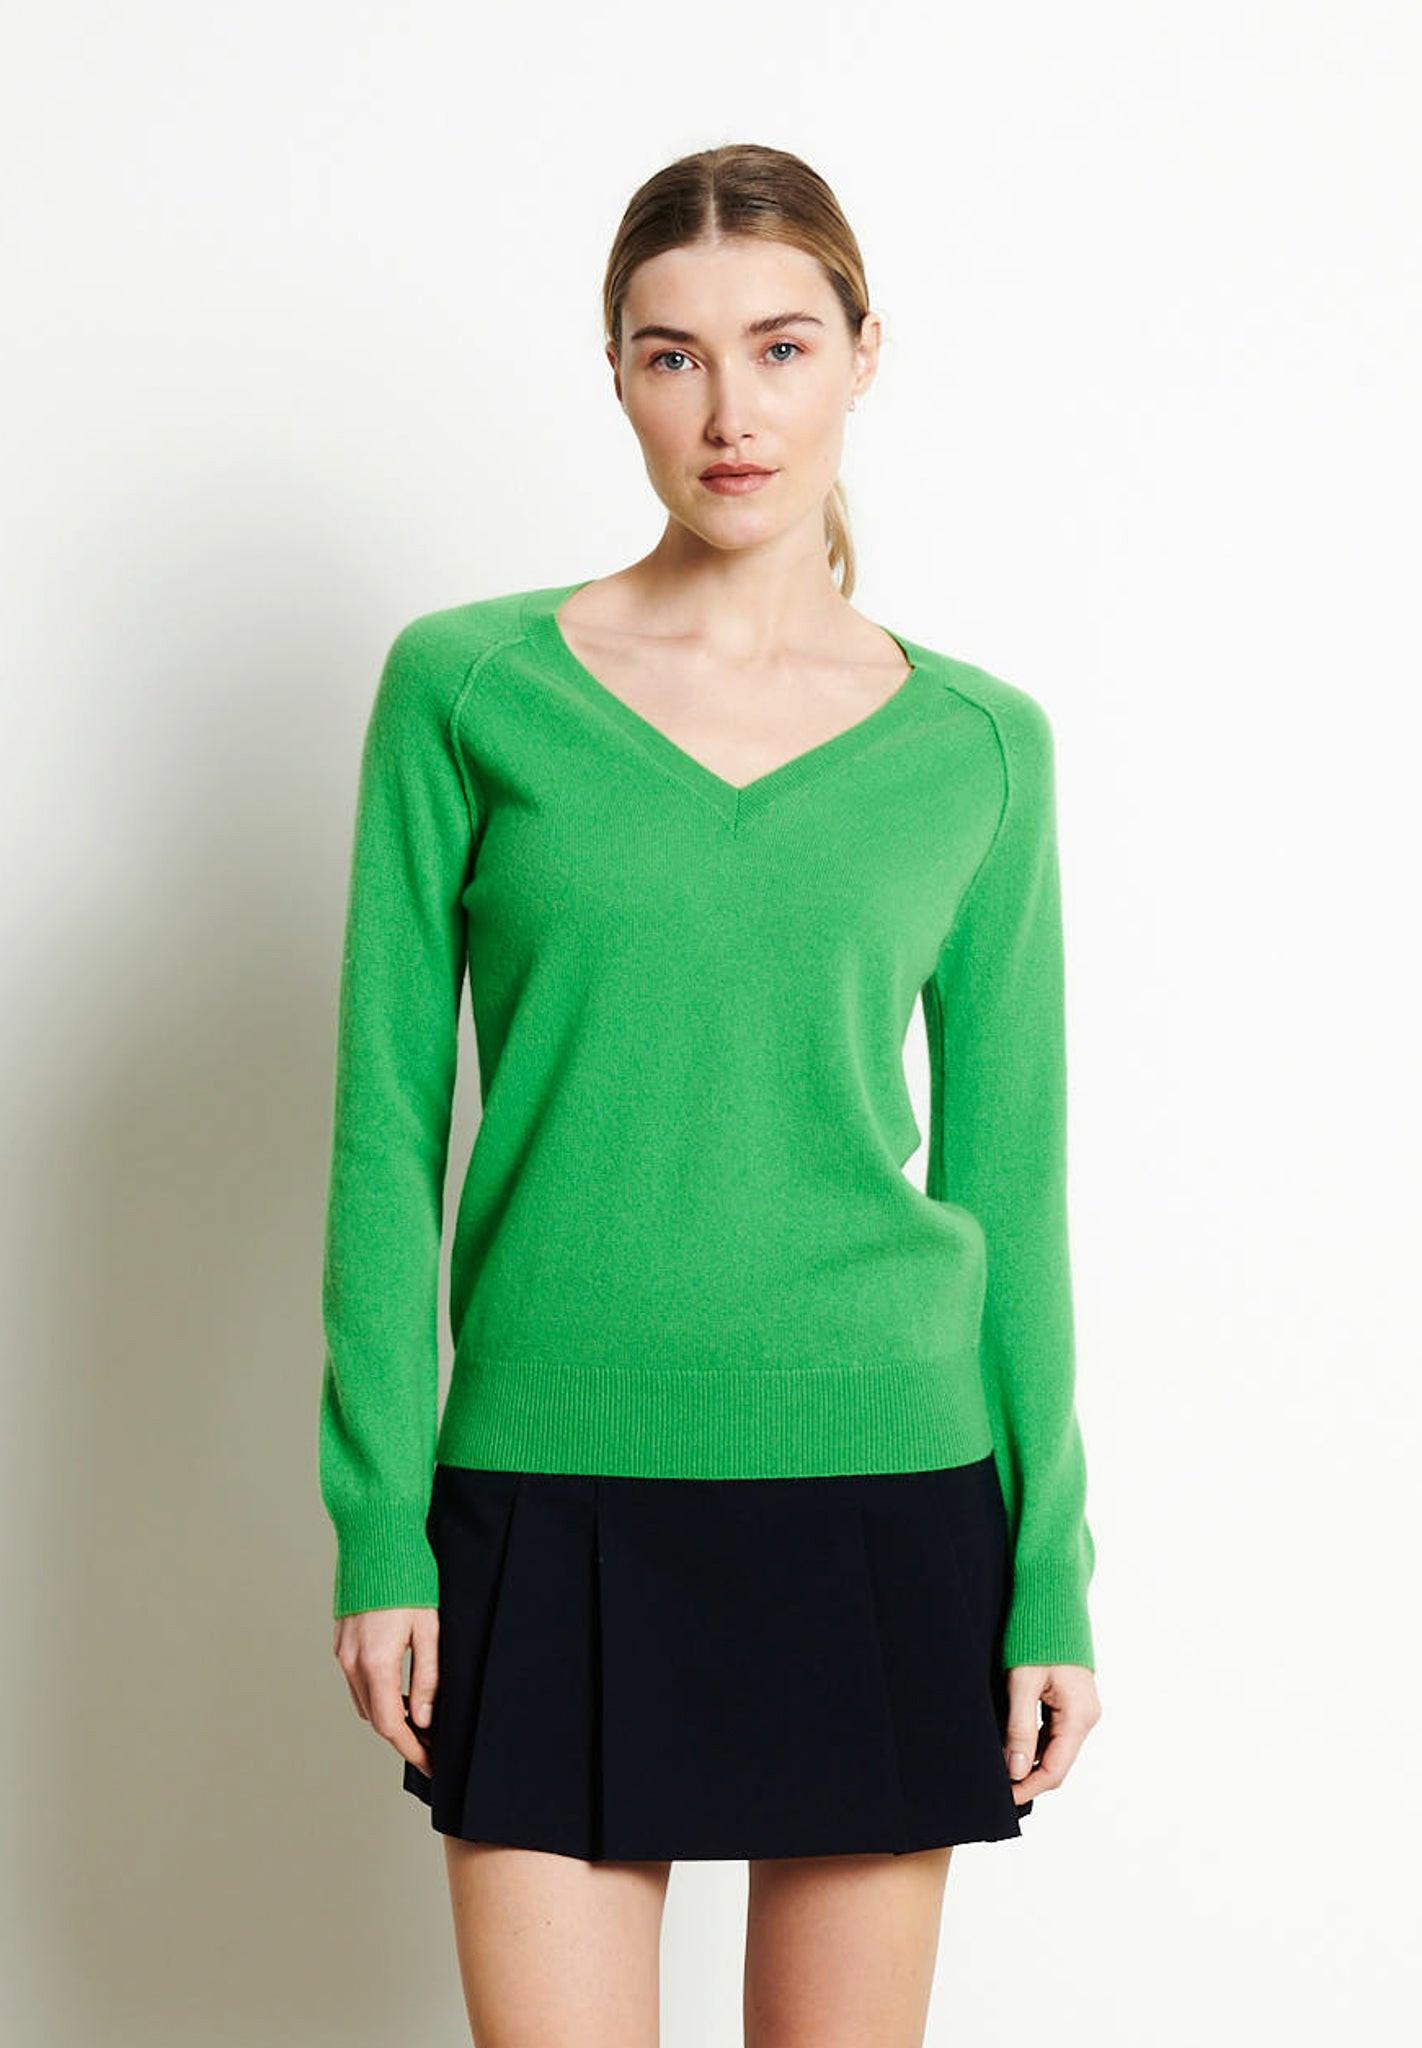 Lilly 6 Pullover Mit V-ausschnitt - 100% Kaschmir Damen Apfelgrün L von Studio Cashmere8